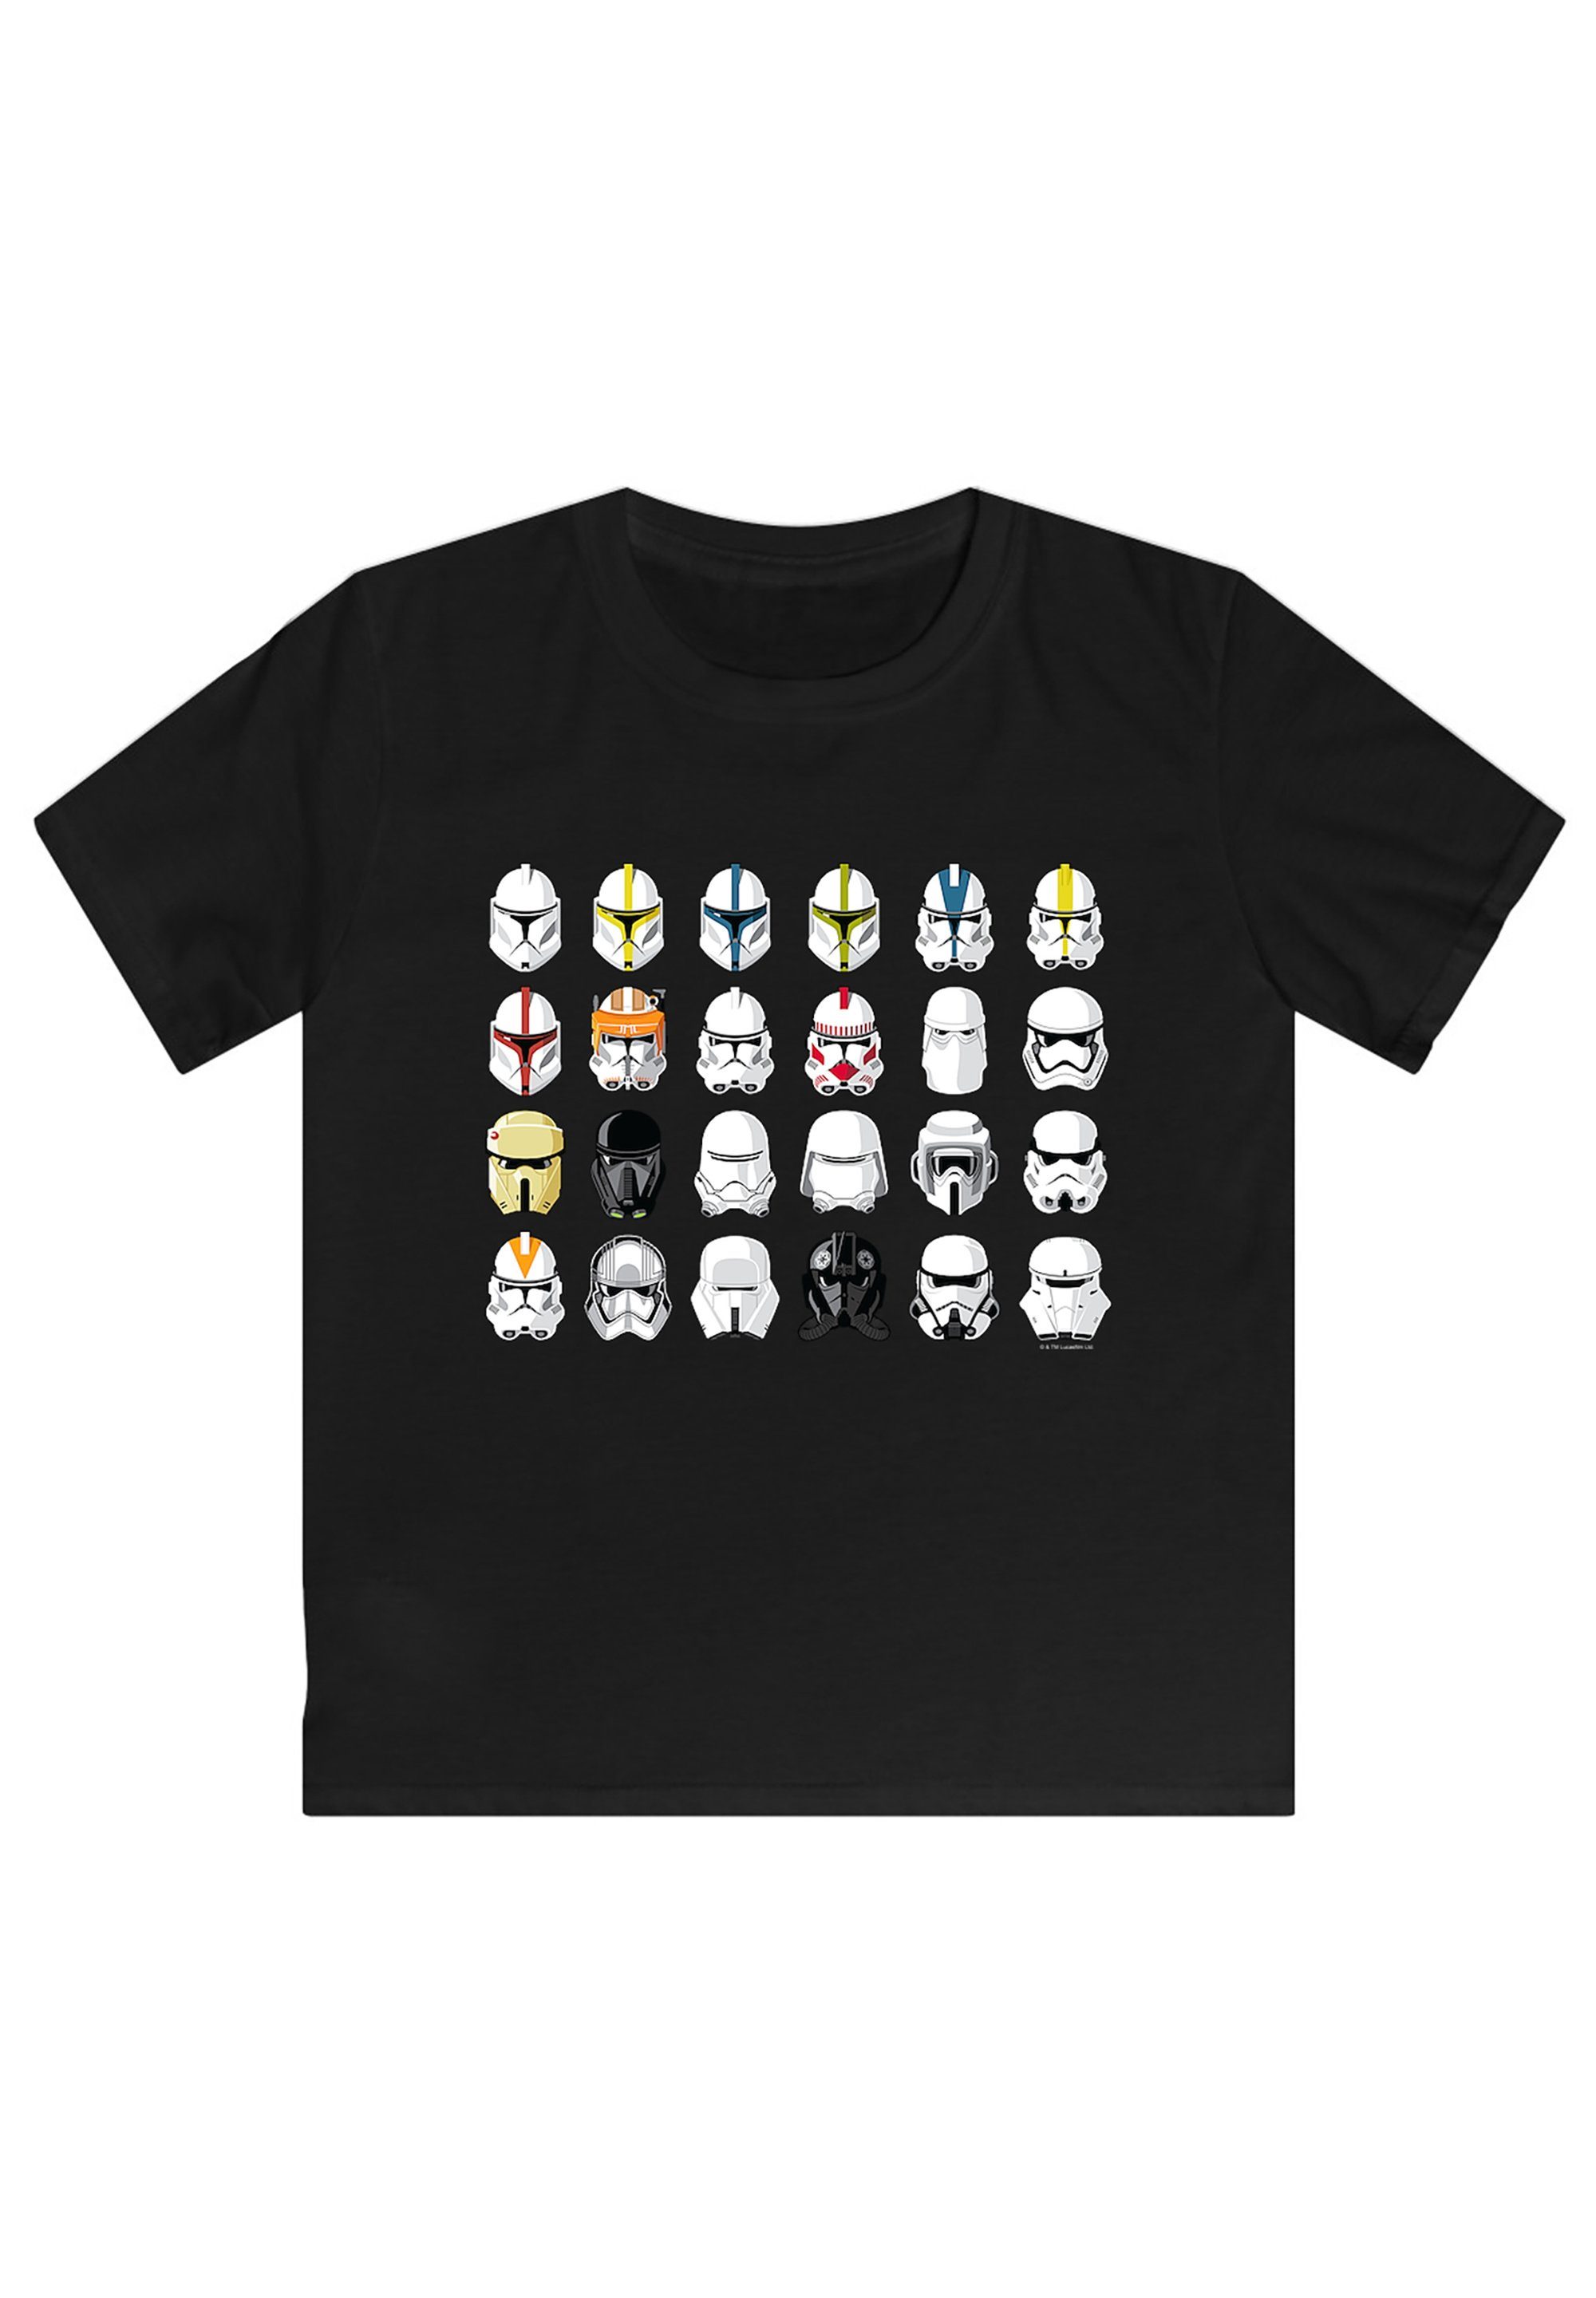 der Stormtrooper Star Wars Piloten T-Shirt Helme Sterne Print F4NT4STIC Krieg schwarz